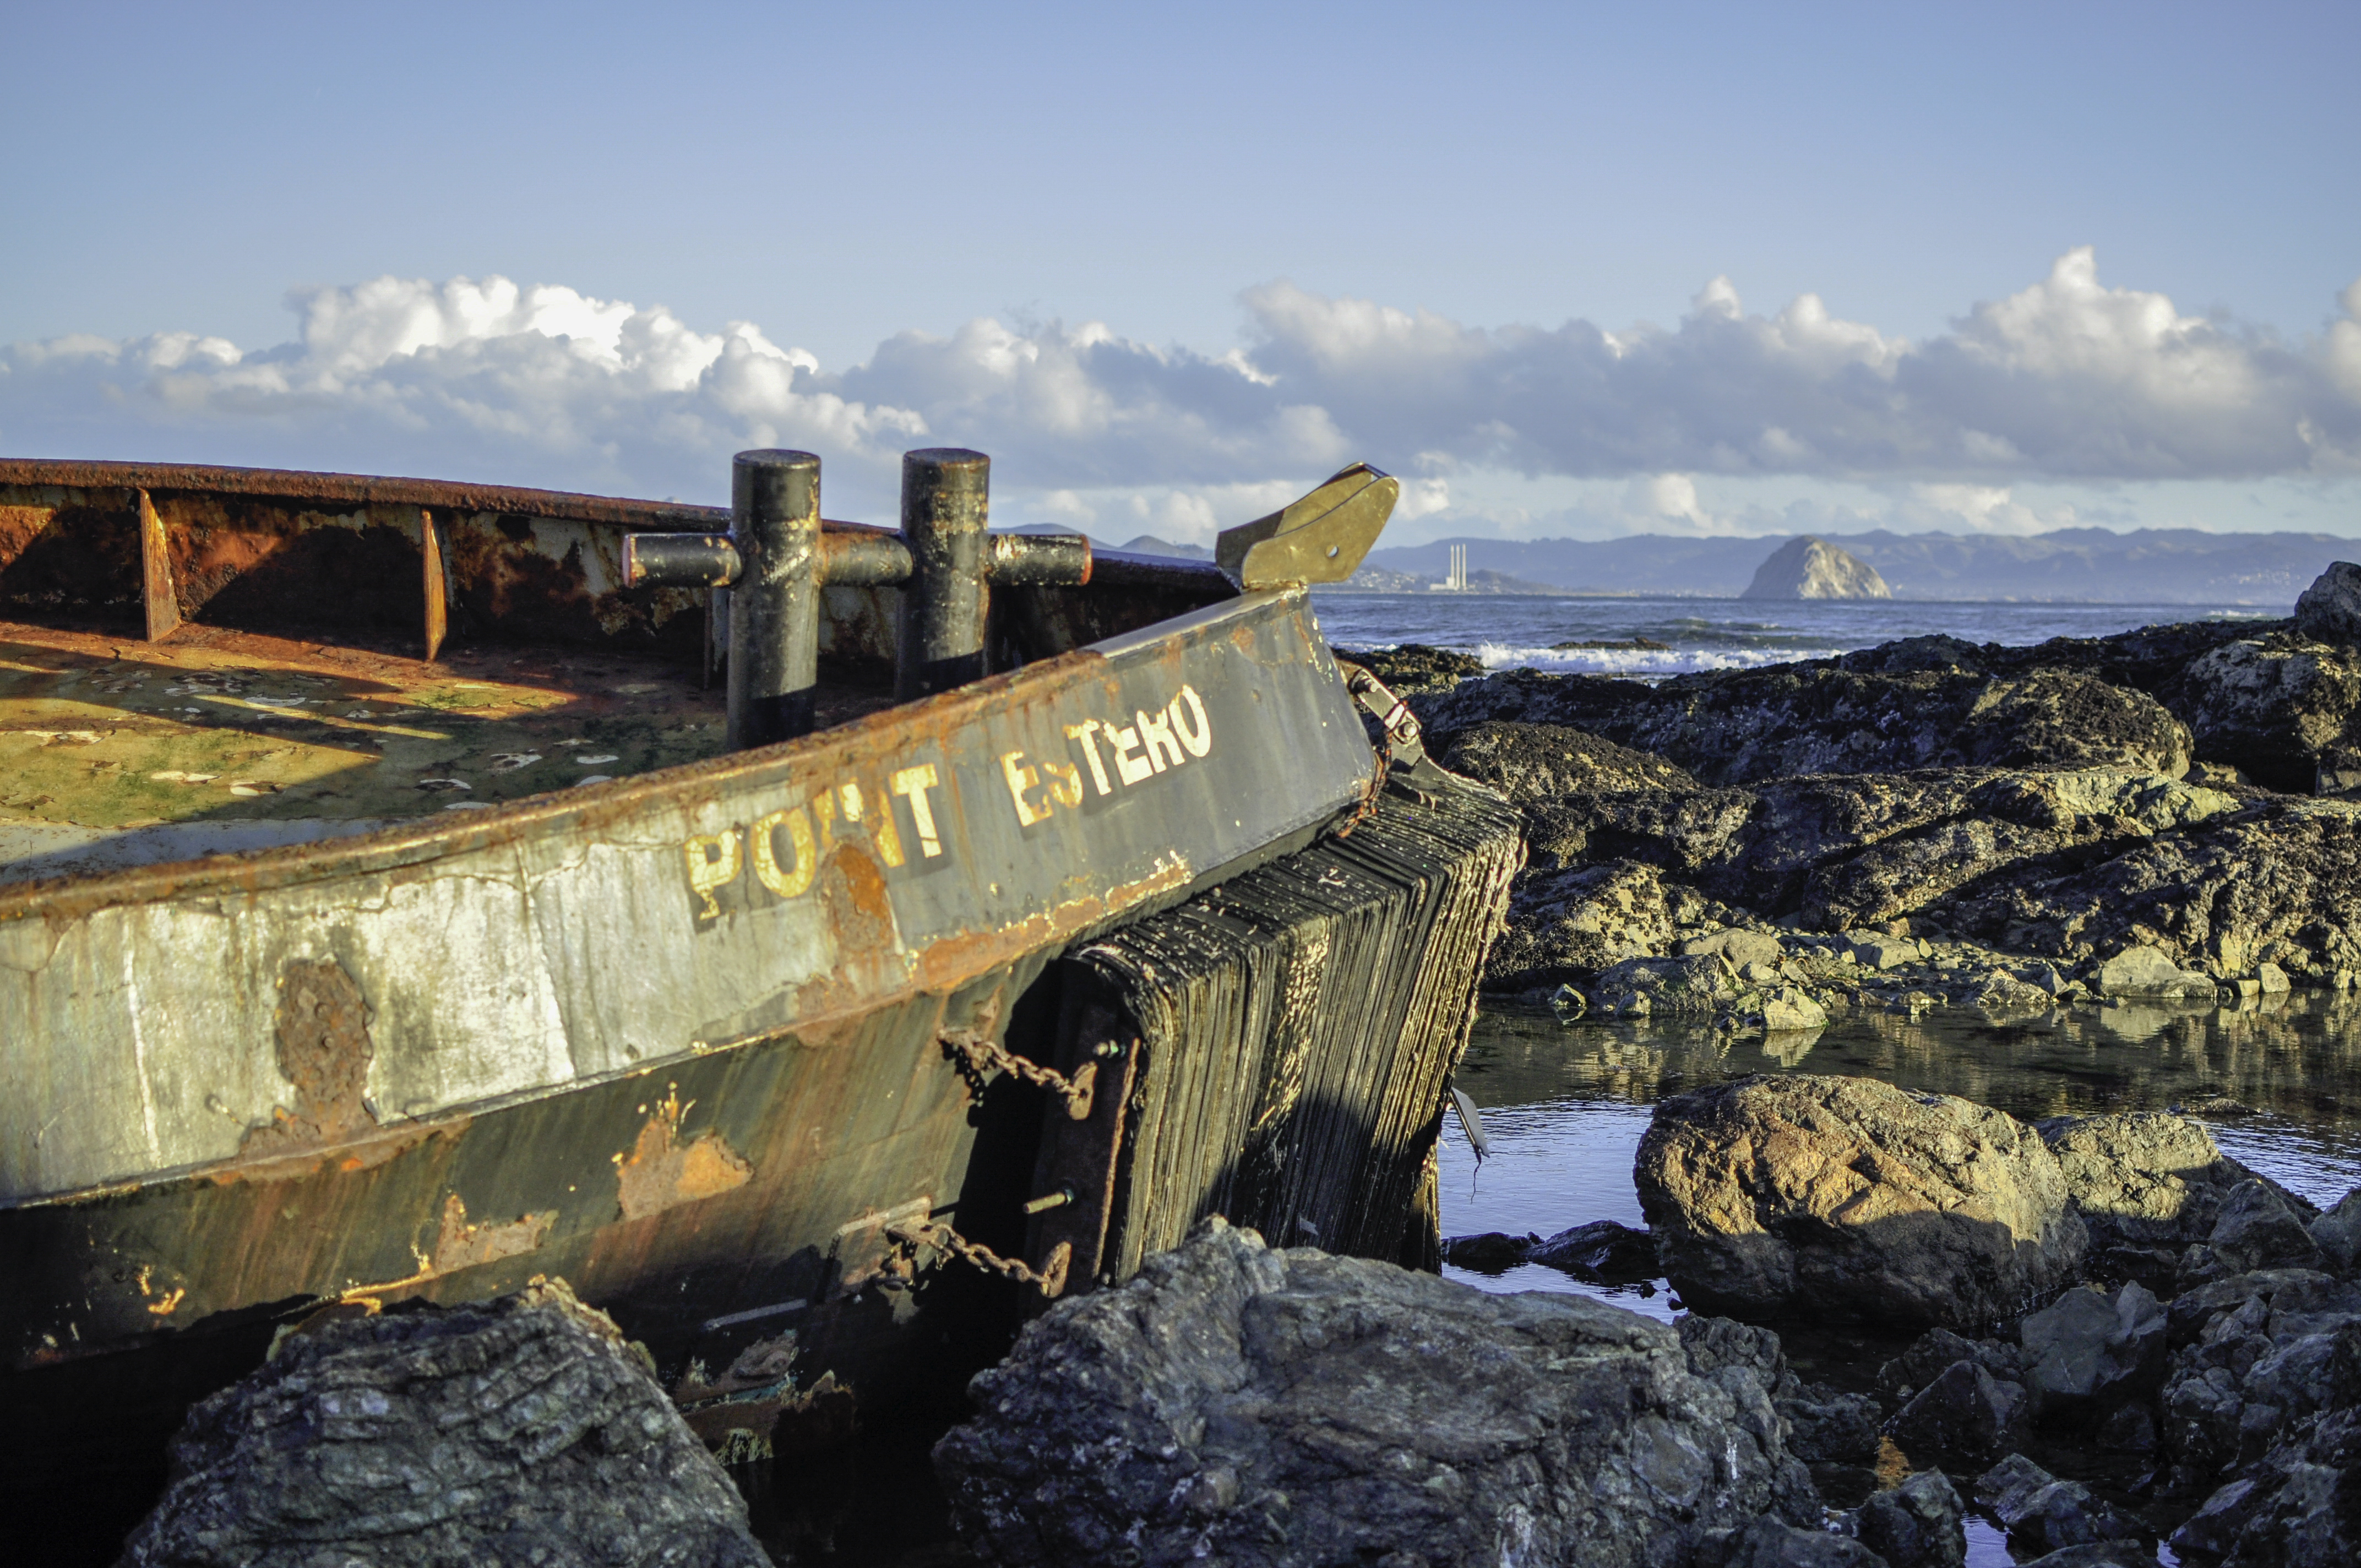 The shipwreck Point Estero